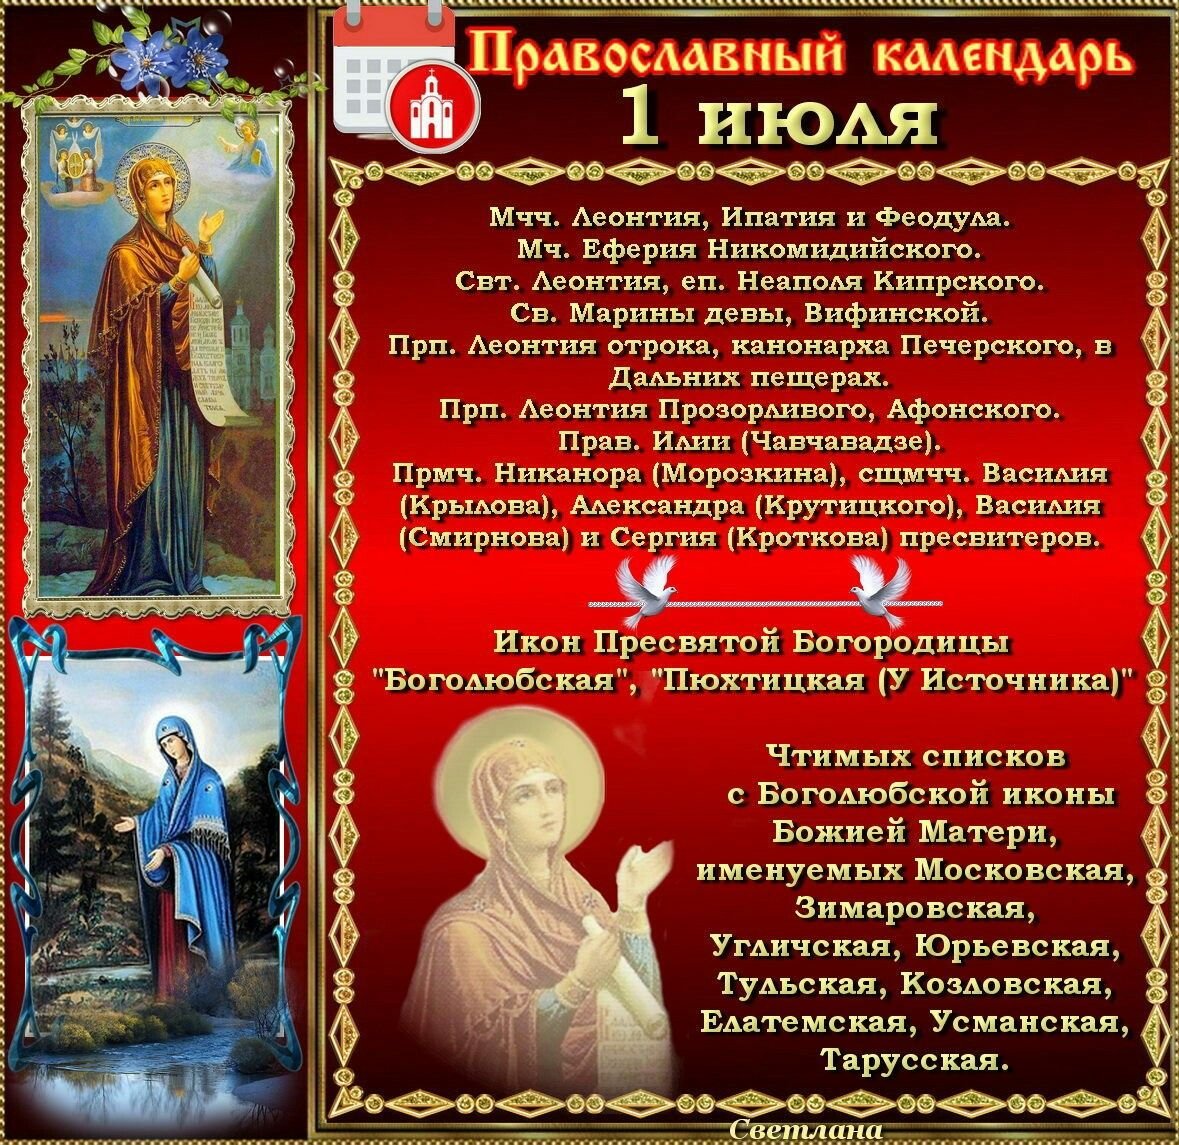 1 июня по старому стилю. Православный календарь. 1 Июля православный праздник. 1 Июля православный календарь. Православный календарь на июль.